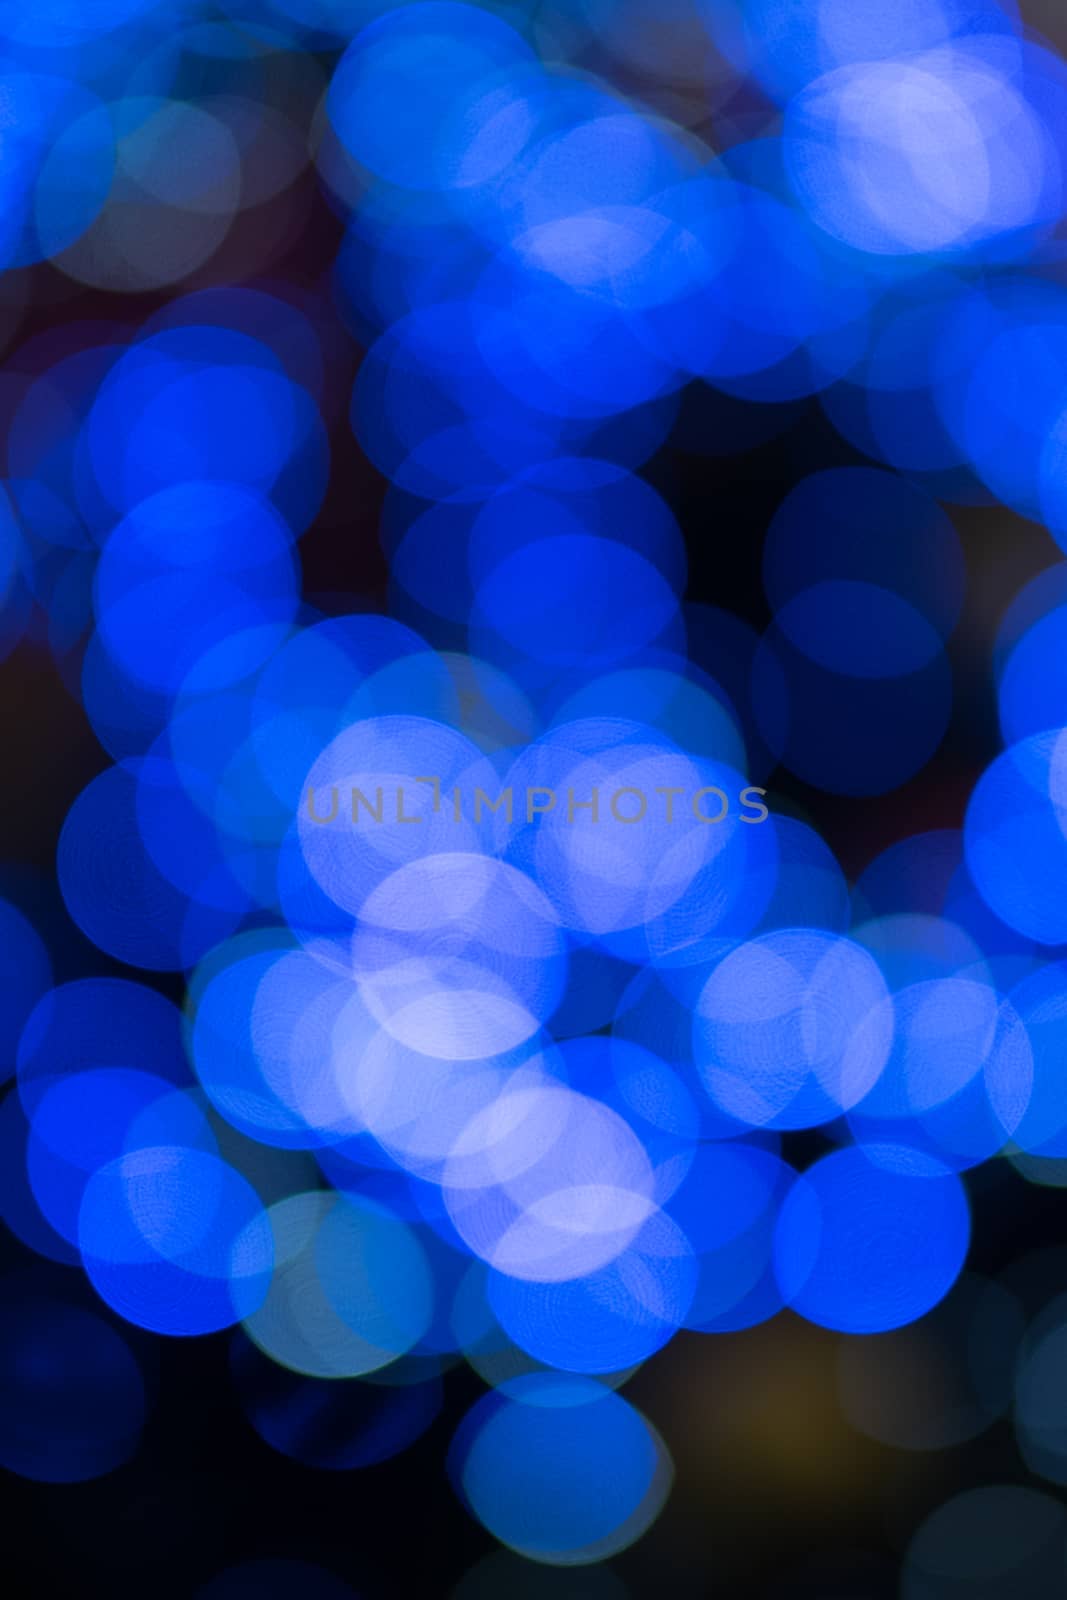 blurred blue light by antpkr